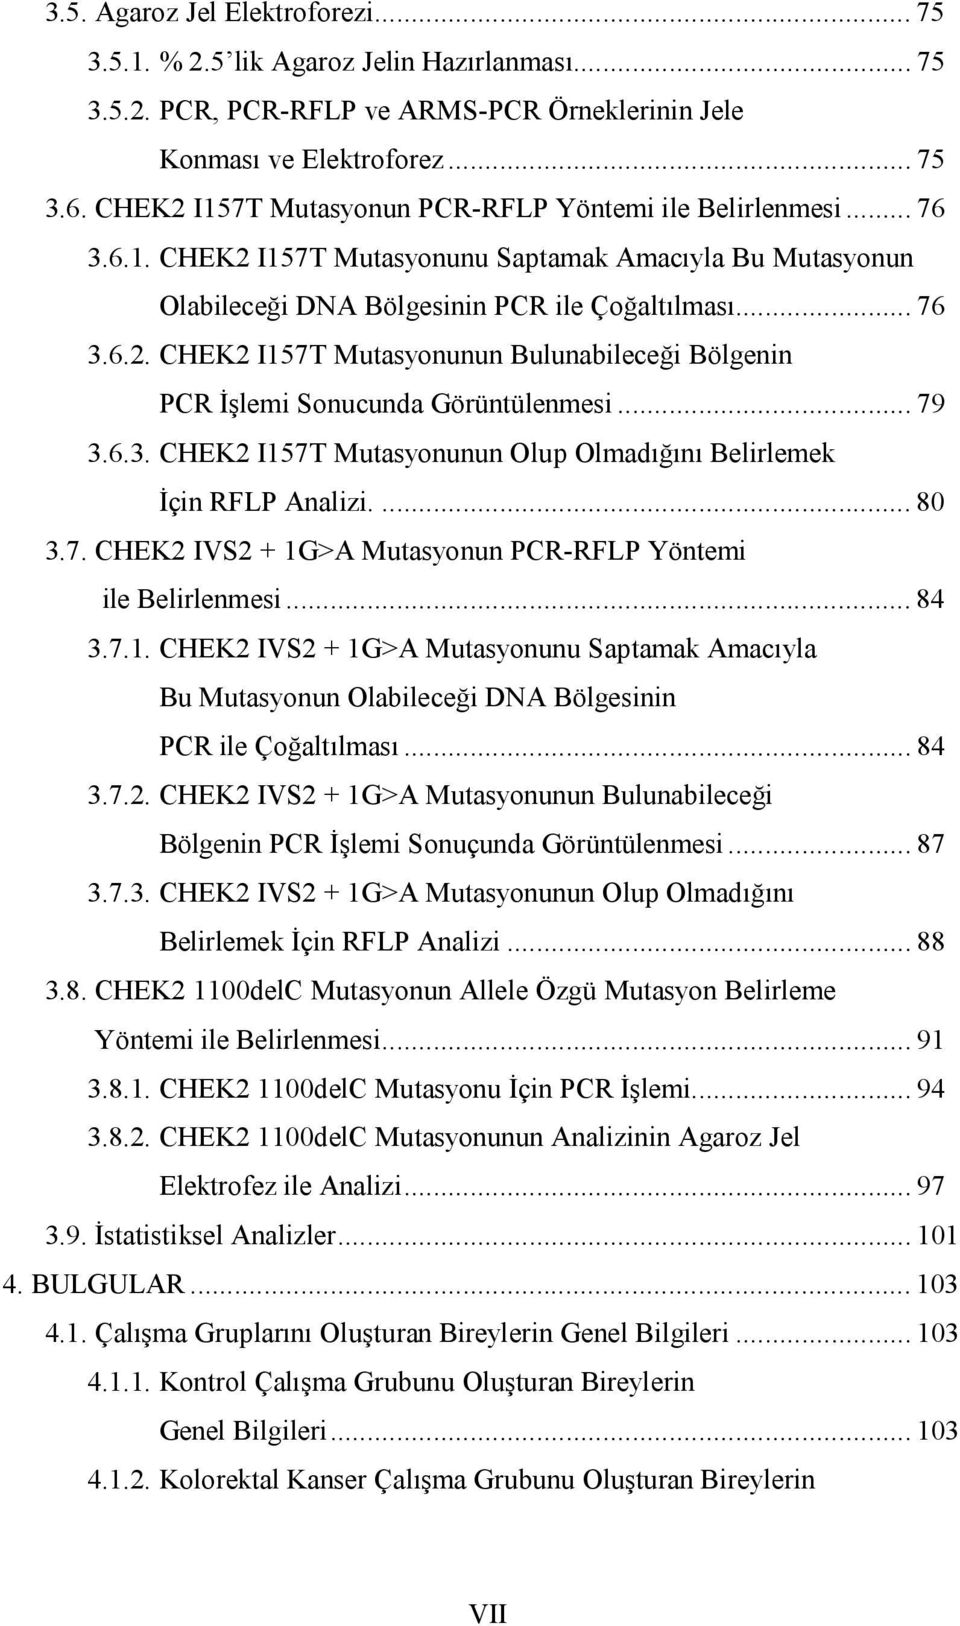 .. 79 3.6.3. CHEK2 I157T Mutasyonunun Olup Olmadığını Belirlemek İçin RFLP Analizi.... 80 3.7. CHEK2 IVS2 + 1G>A Mutasyonun PCR-RFLP Yöntemi ile Belirlenmesi... 84 3.7.1. CHEK2 IVS2 + 1G>A Mutasyonunu Saptamak Amacıyla Bu Mutasyonun Olabileceği DNA Bölgesinin PCR ile Çoğaltılması.